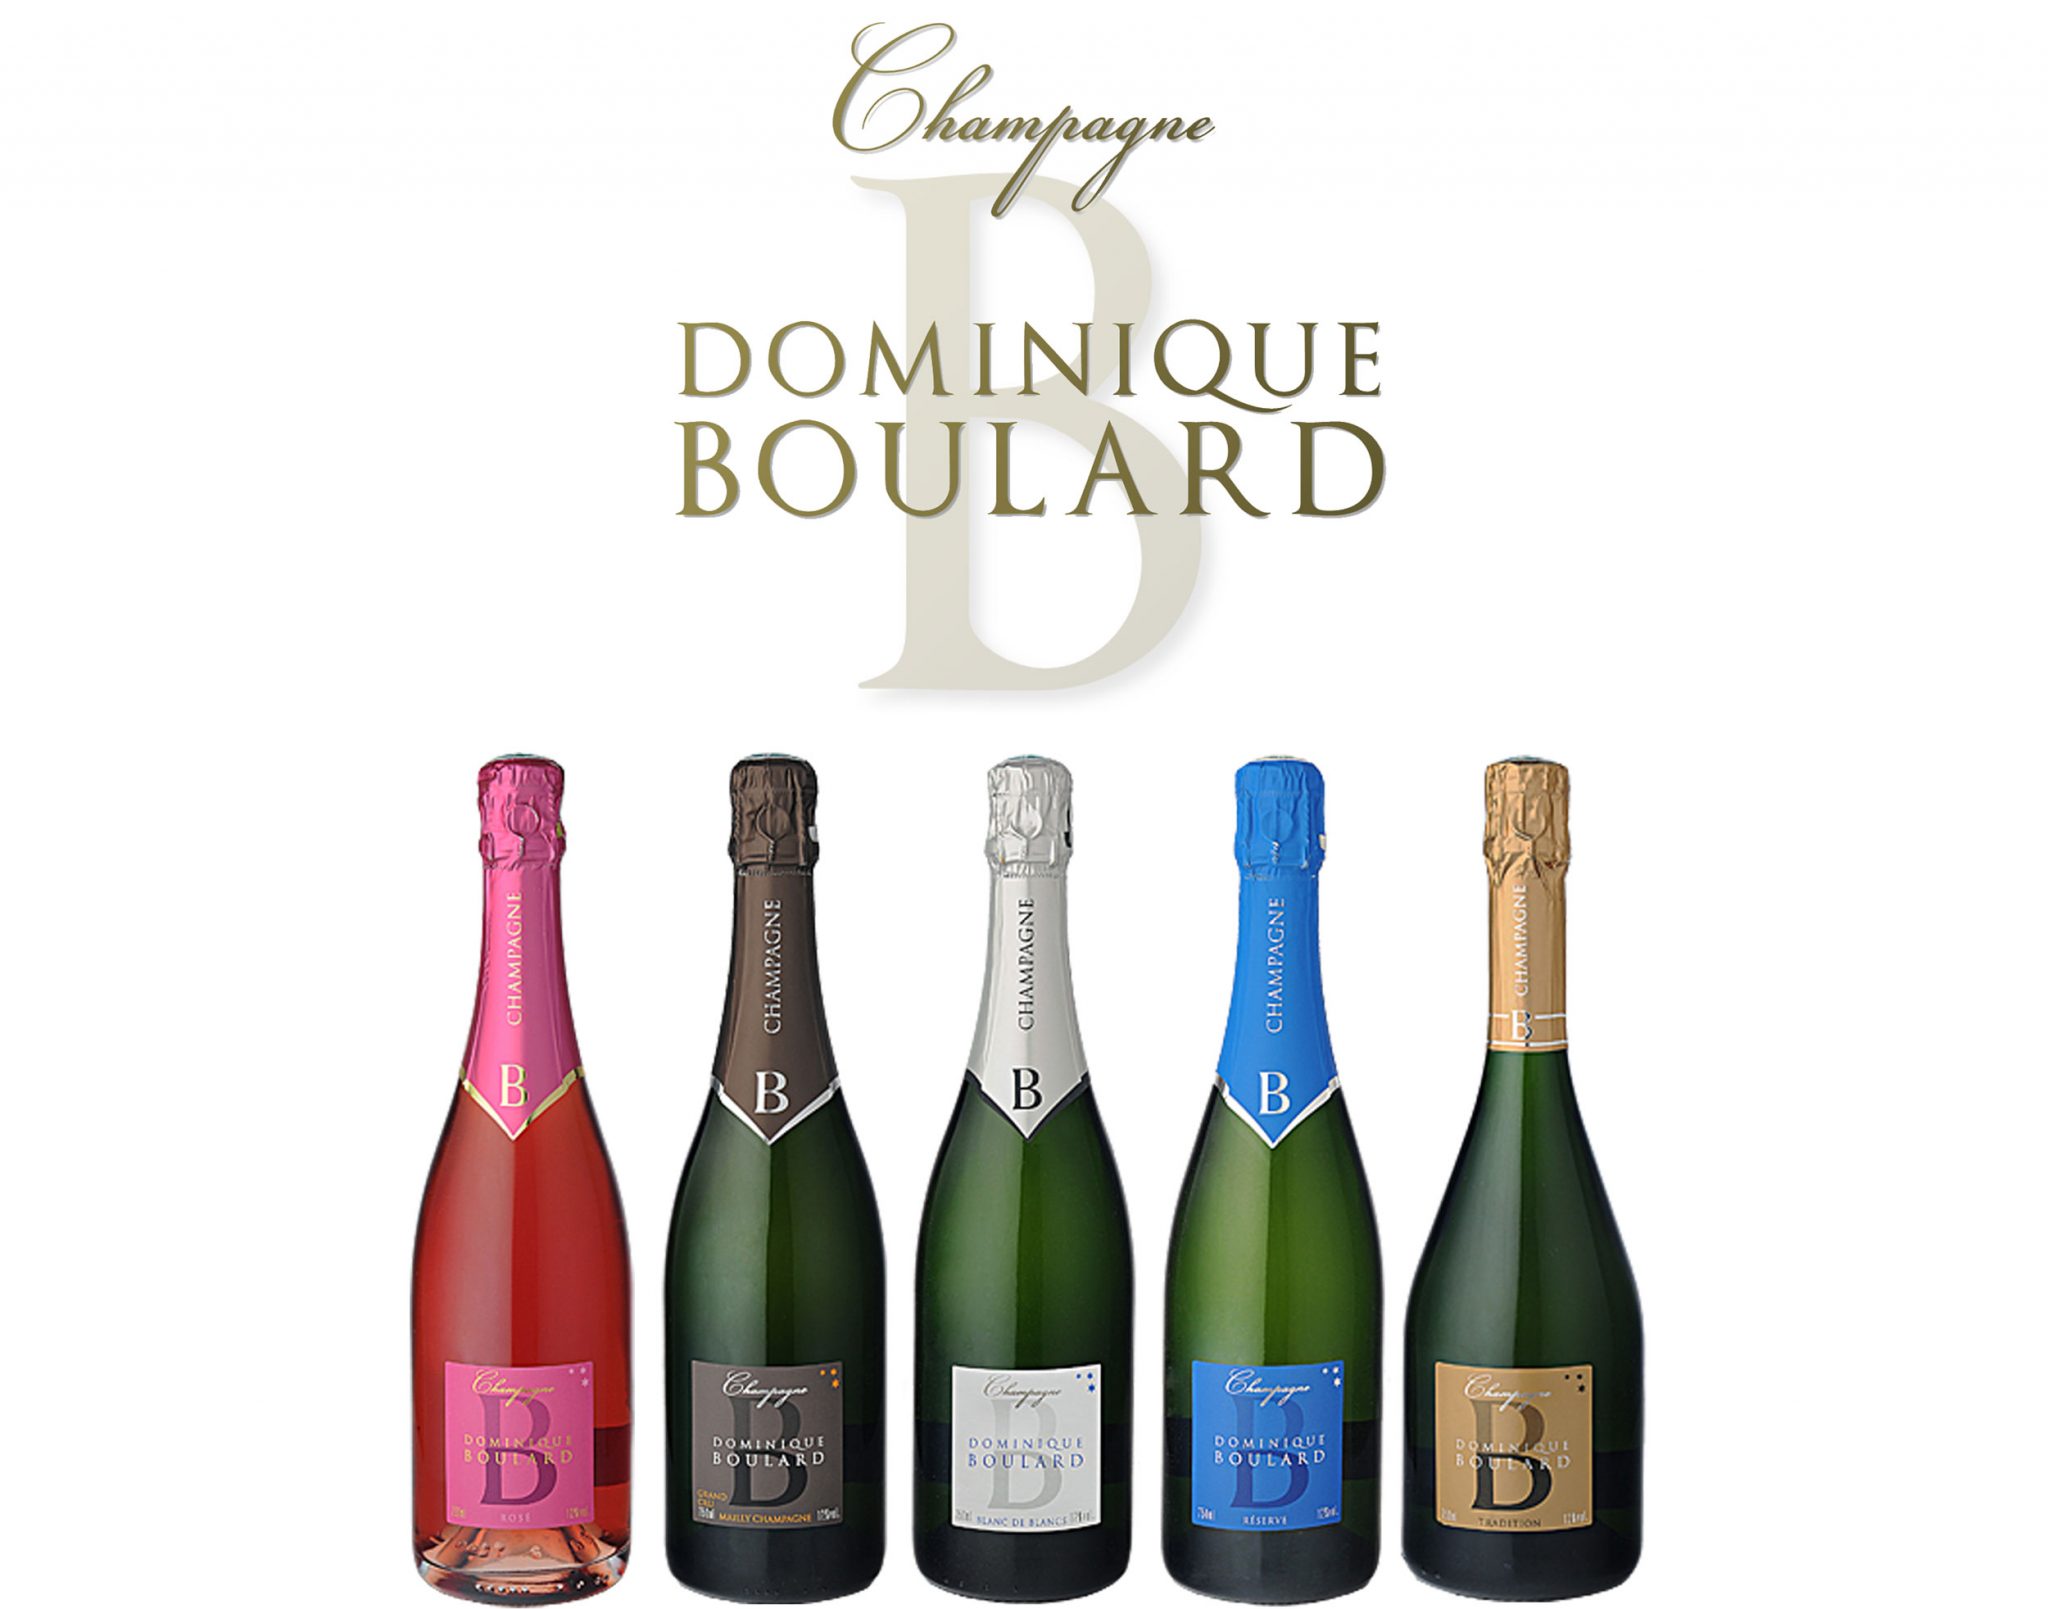 Champagne Dominique Boulard